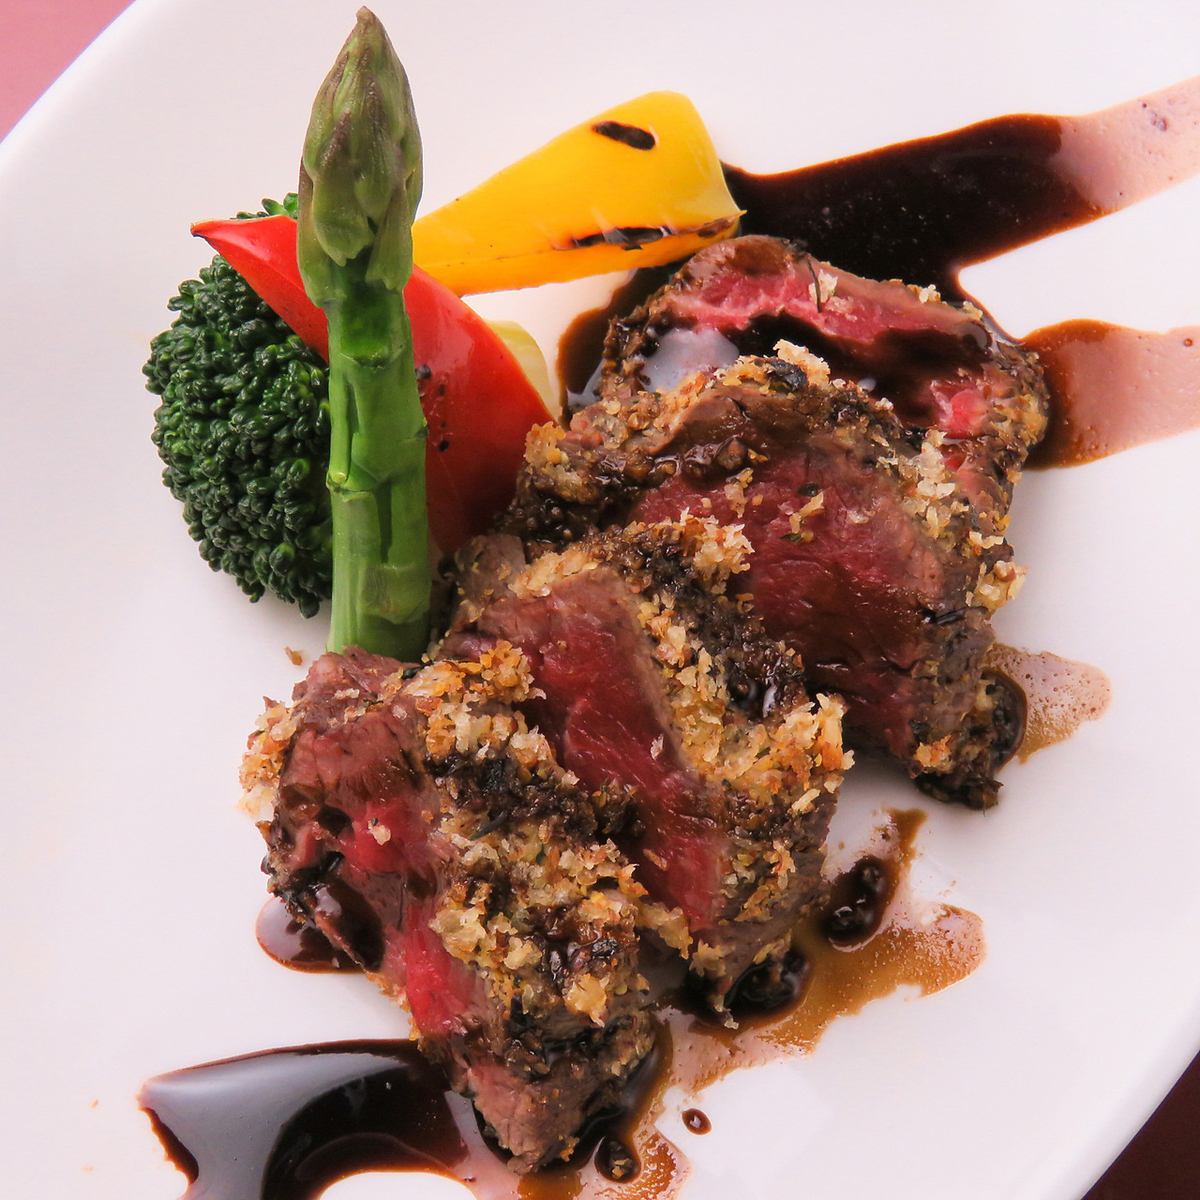 許多日式和西式創意菜餚均採用大量新鮮的阿波特色菜和時令食材烹製而成。